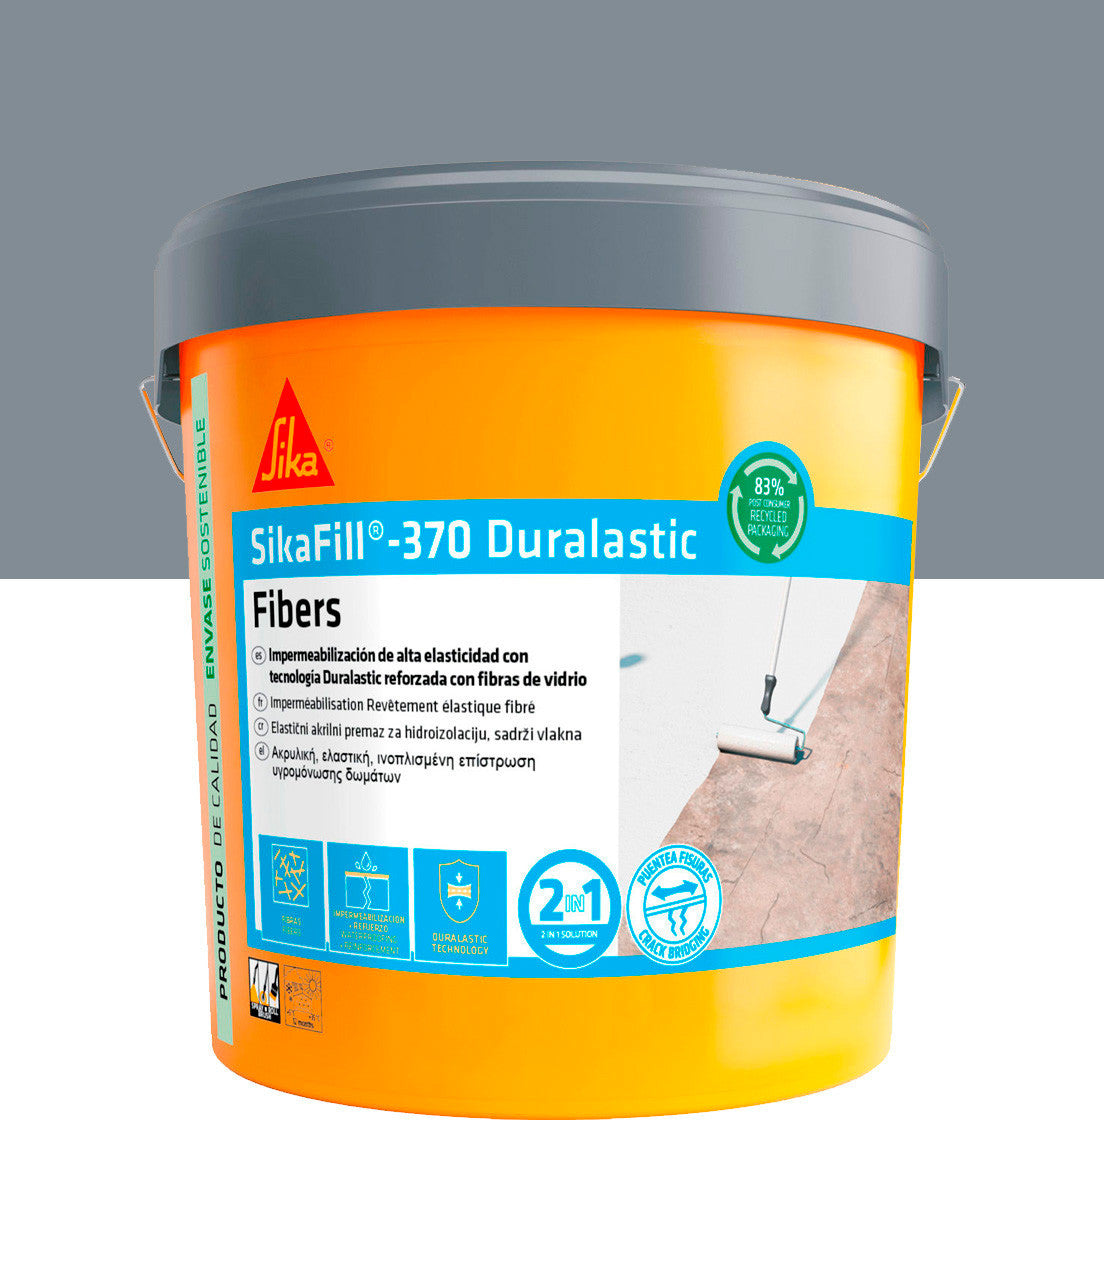 Bote Pintura Impermeable Sikafill-370 Fibras 5kg SIKA - 4